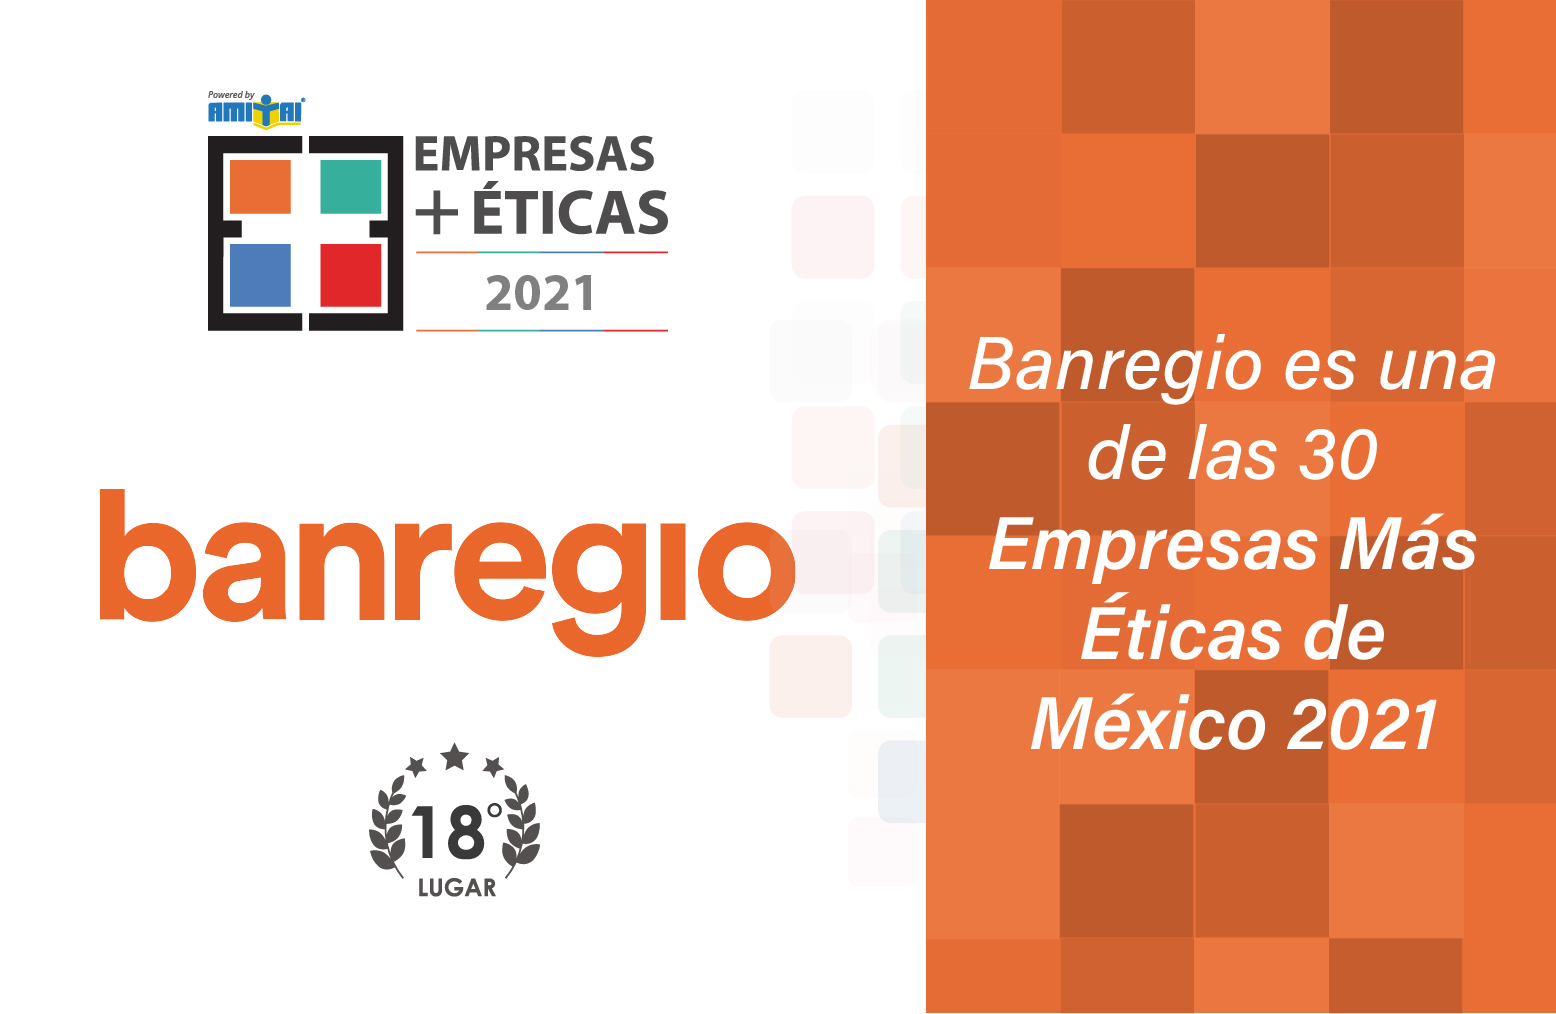 Banregio es una de las 30 Empresas Más Éticas de México 2021